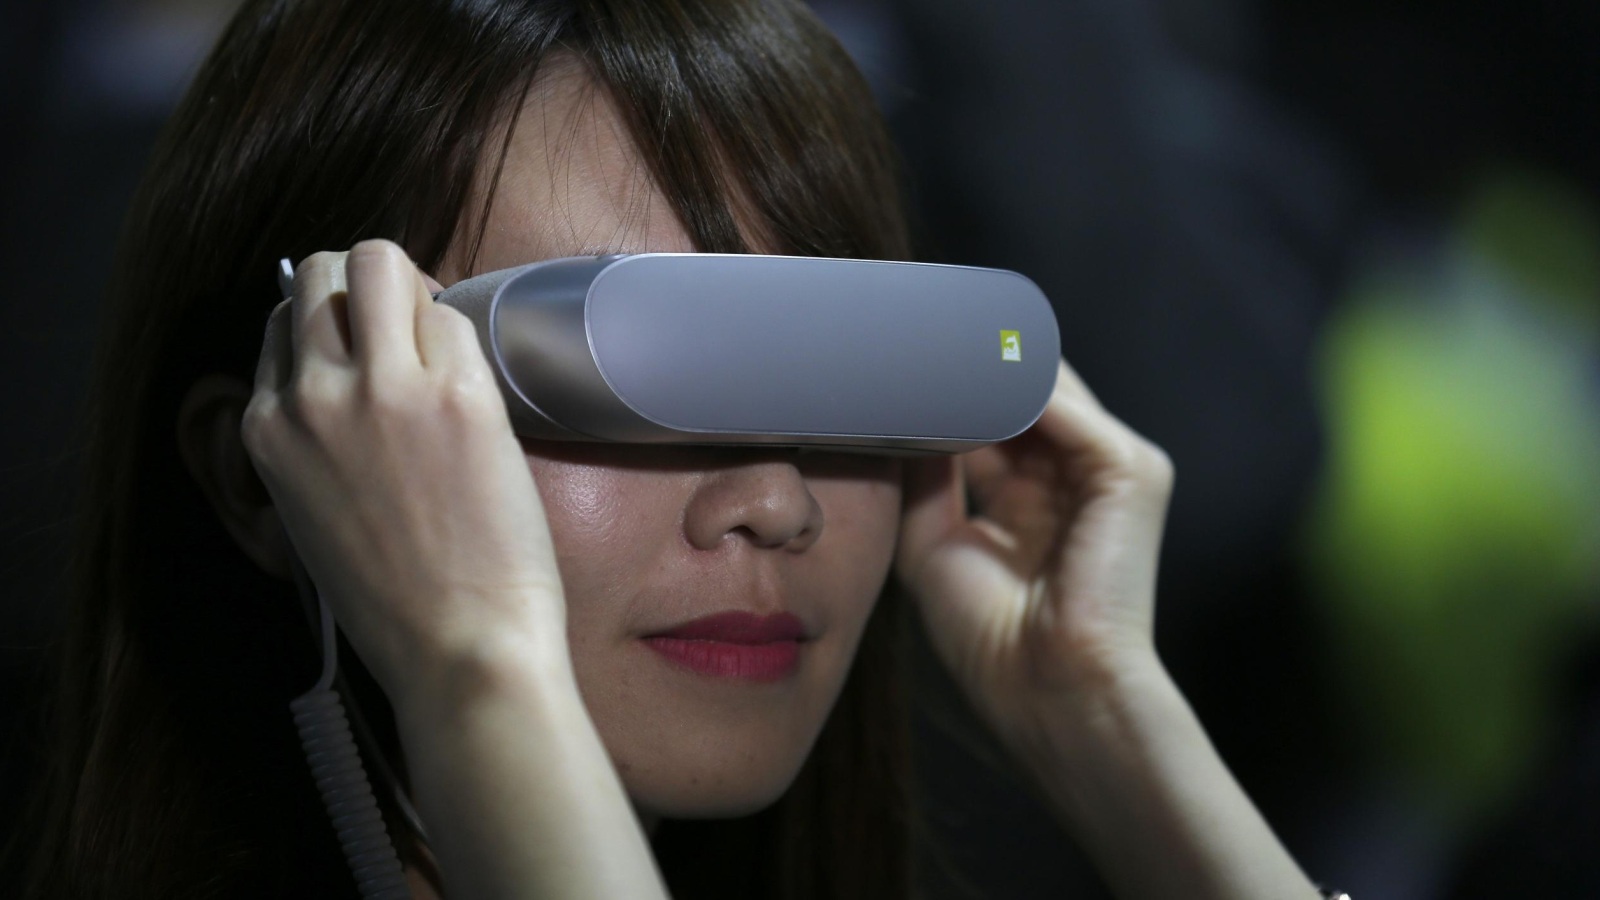 ‪ملحقات الهواتف الذكية مثل نظارة الواقع الافتراضي، شهدت حضورا كبيرا في مؤتمر الجوال العالمي‬ (أسوشيتد برس)